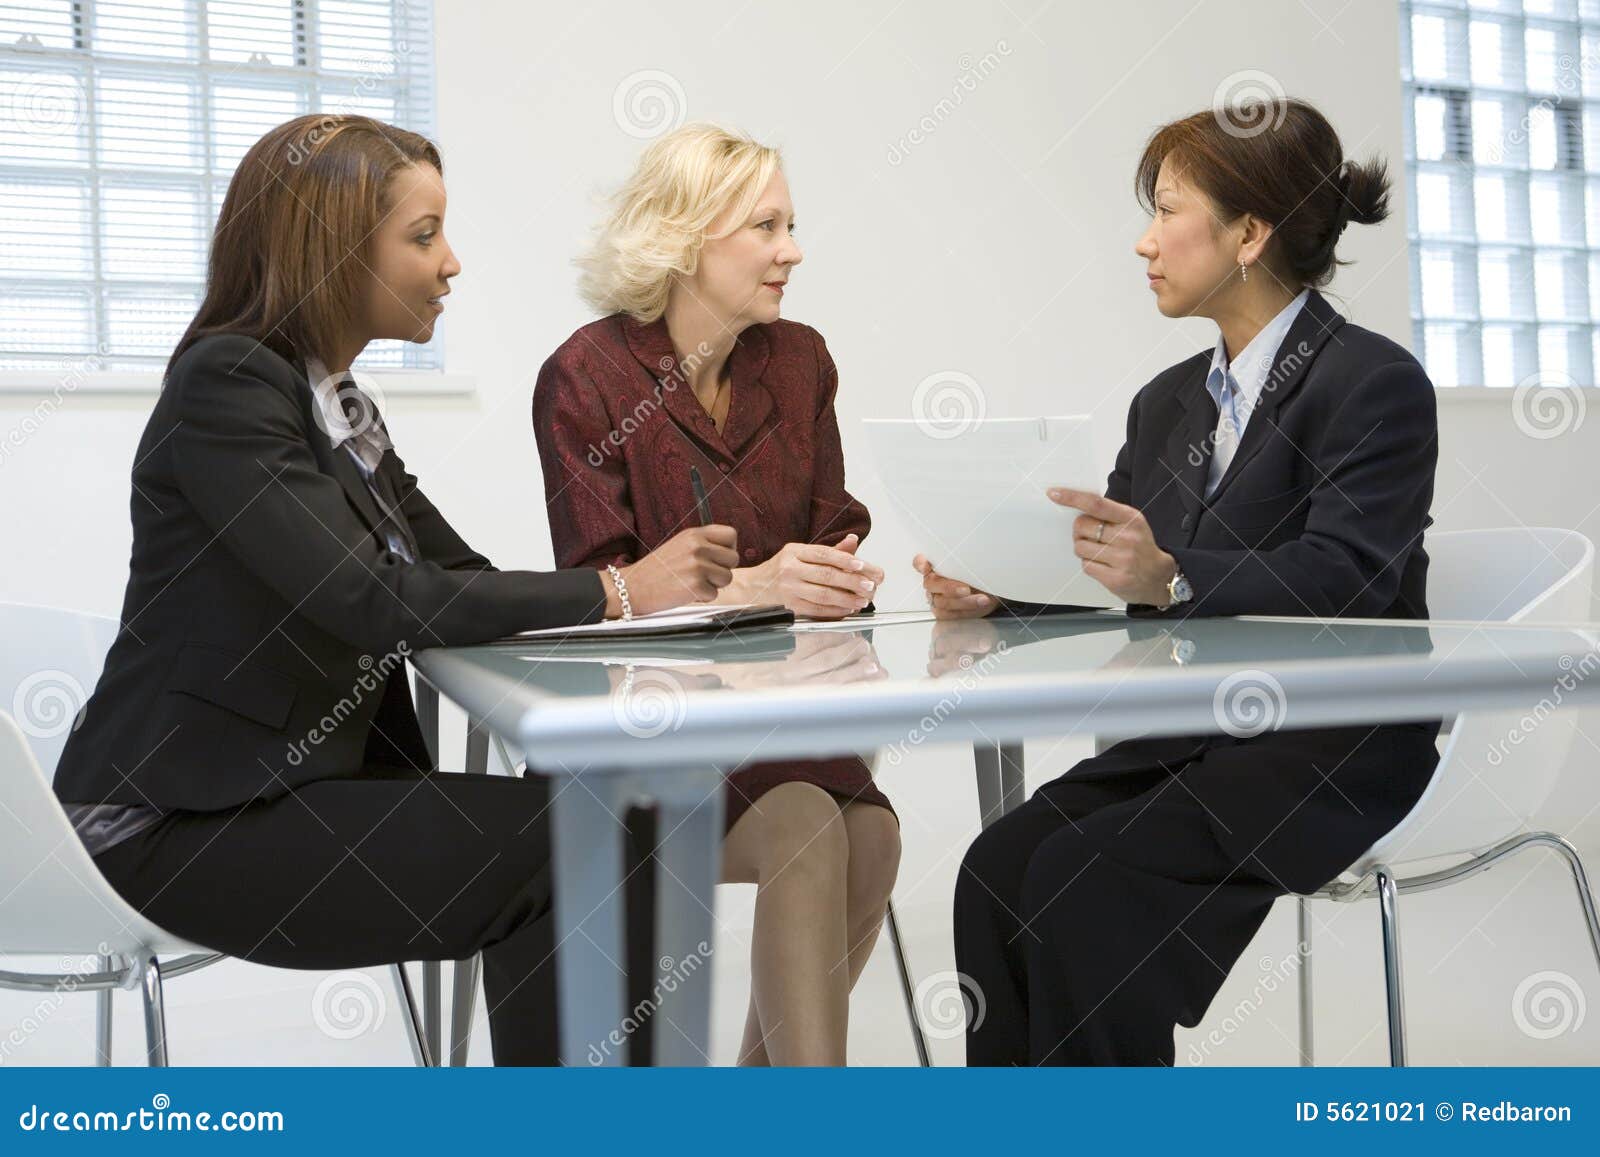 businesswomen in meeting